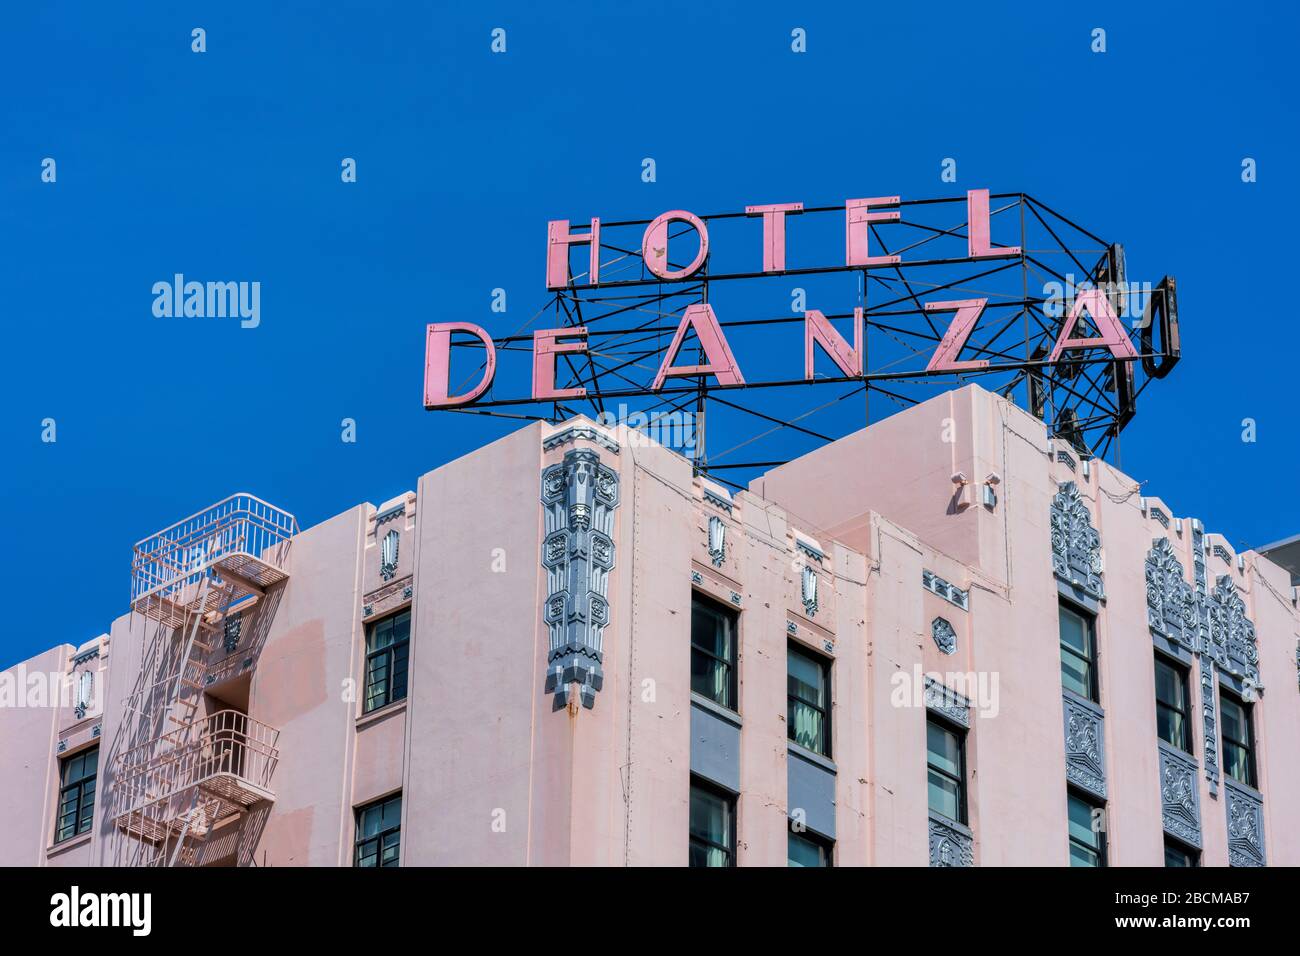 El Hotel de Anza seña en un edificio histórico Zig Zag Moderne, Art Deco,  en el centro de la ciudad más grande del área de la Bahía de San Francisco  - San